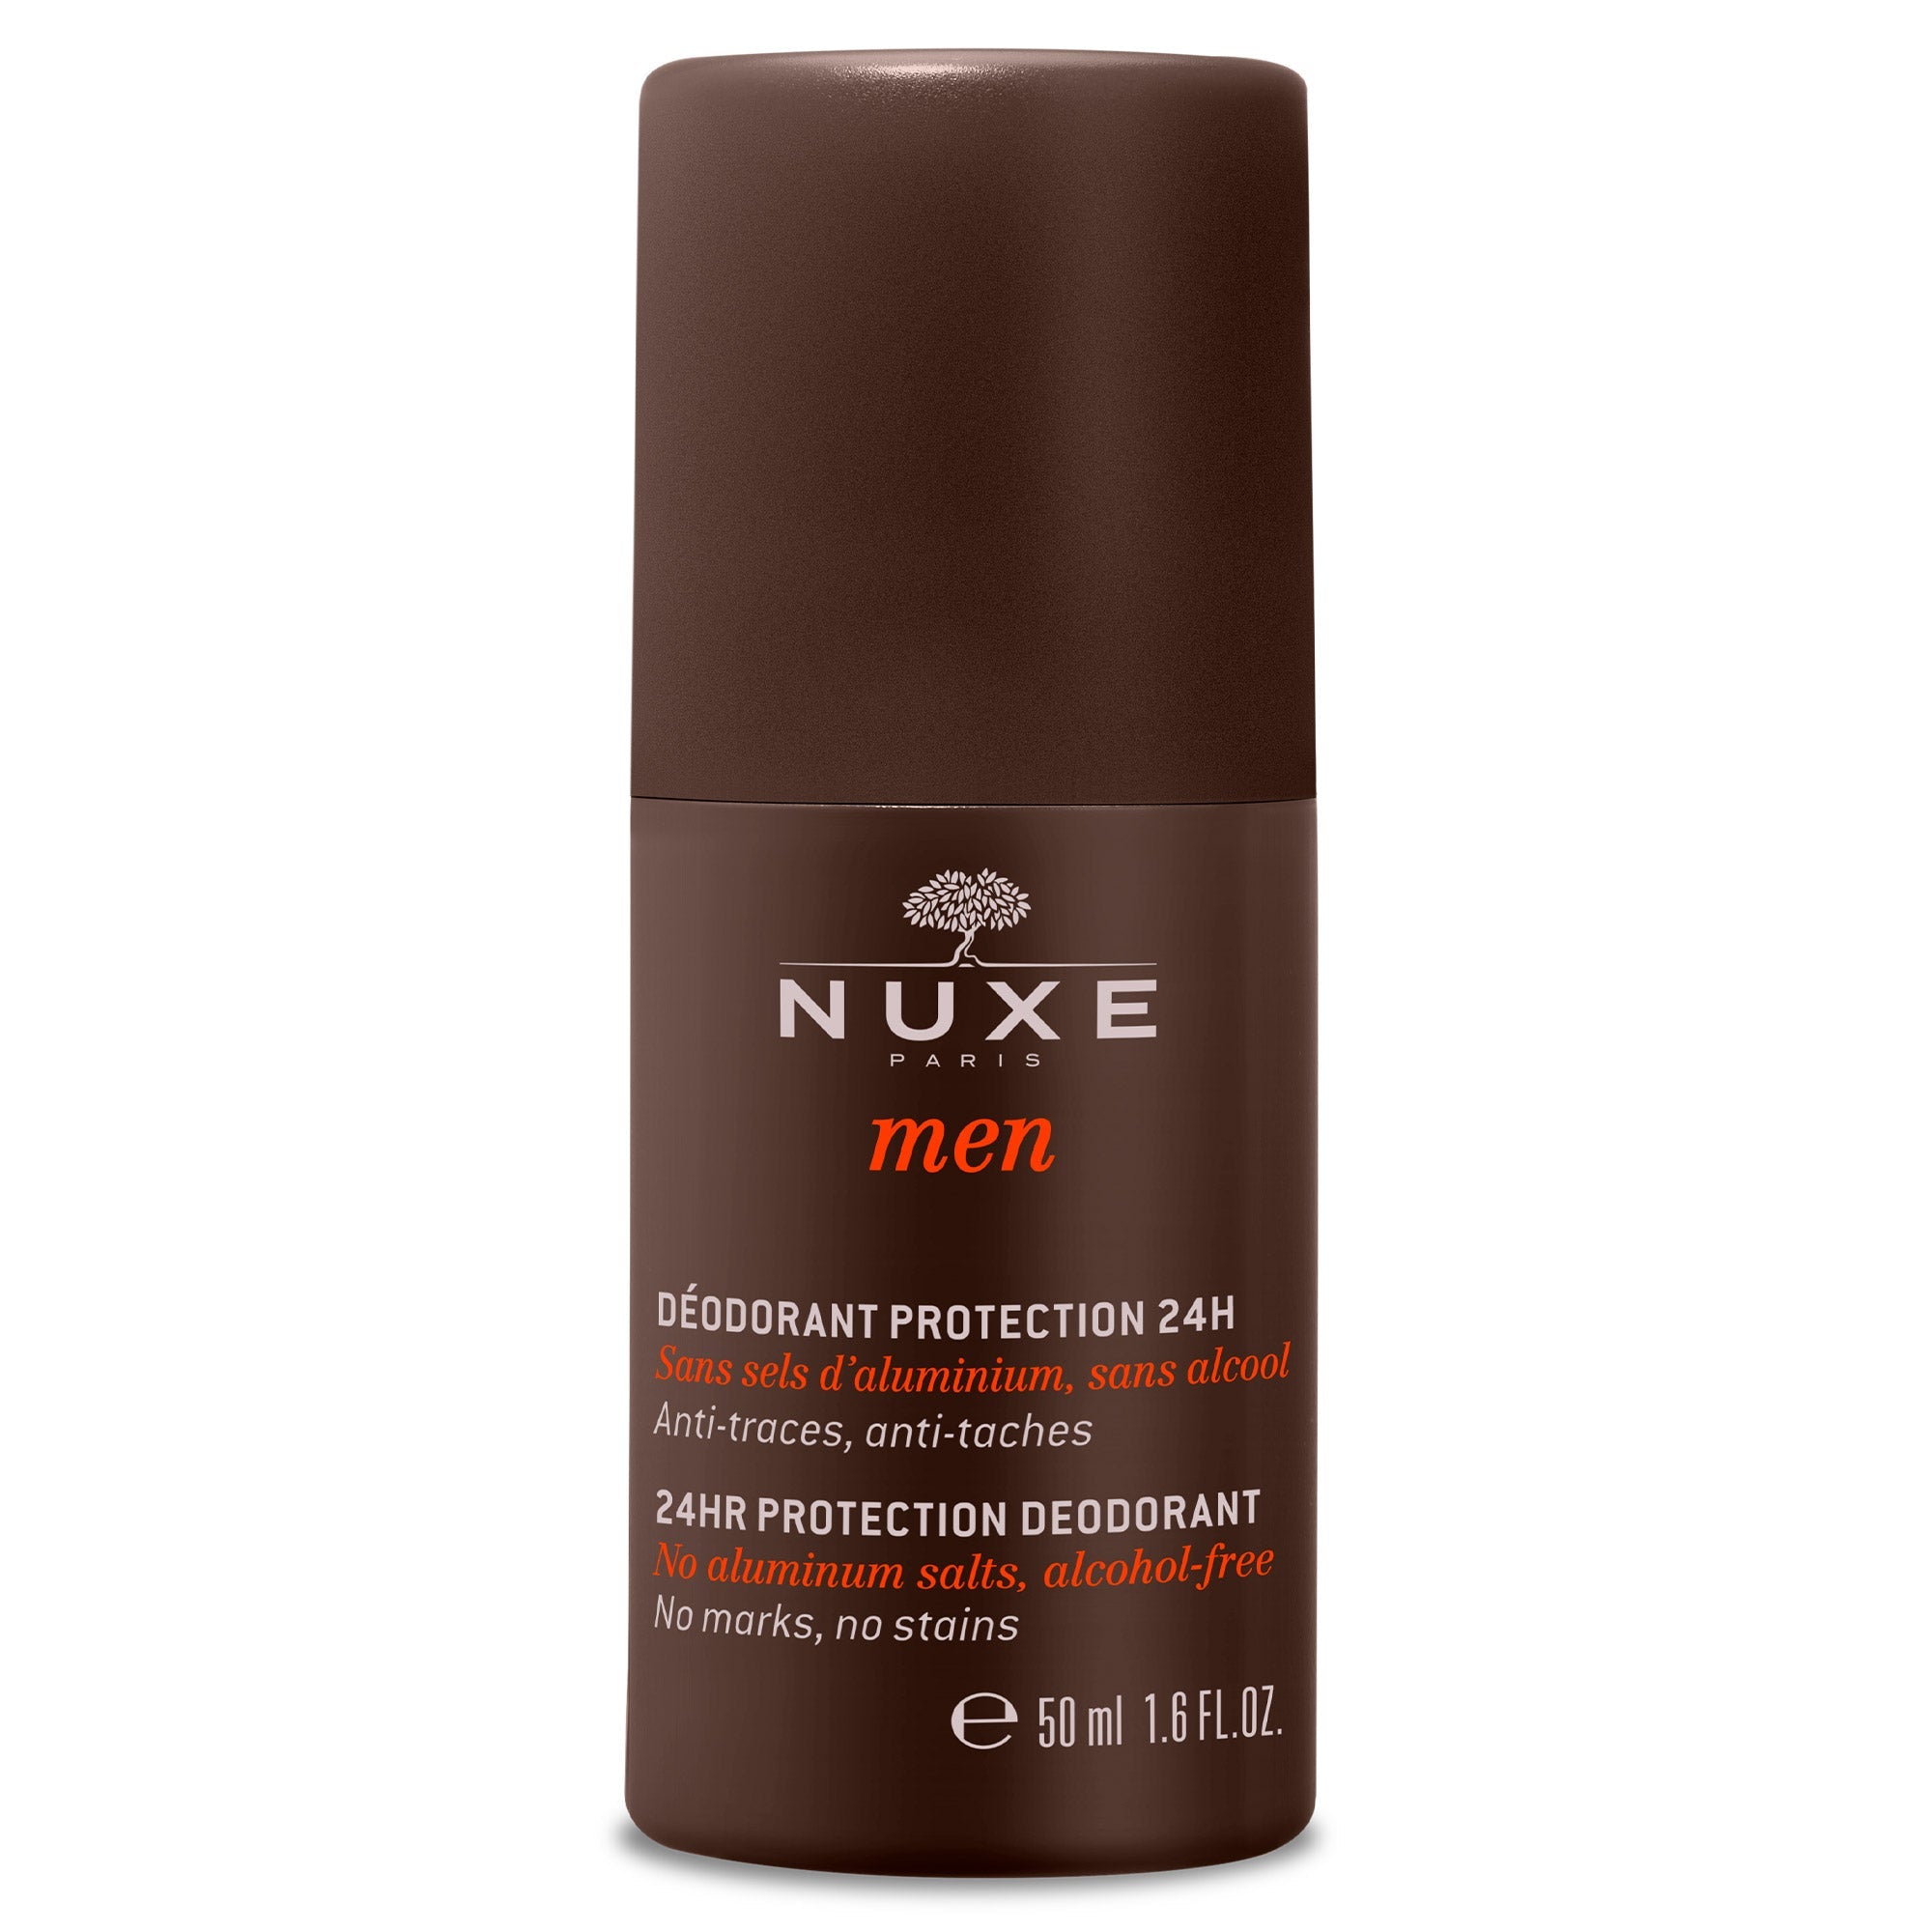 Nuxe Men 24 HR Deodorant 50 ml